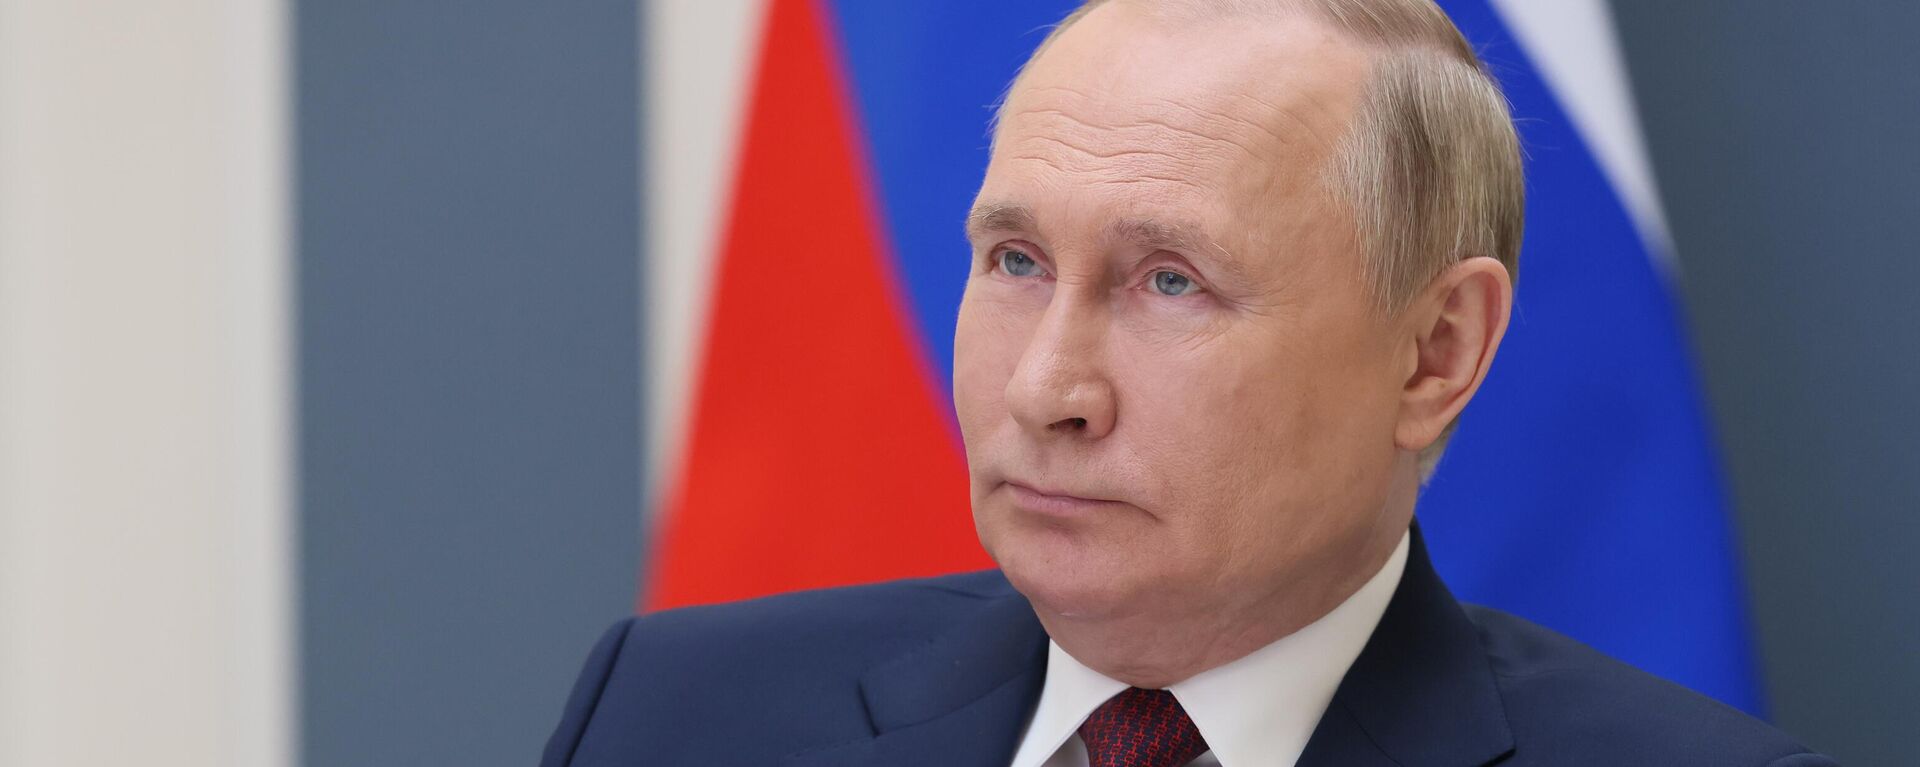 Президент РФ В. Путин выступил на Евразийском экономическом форуме - Sputnik Грузия, 1920, 30.06.2022